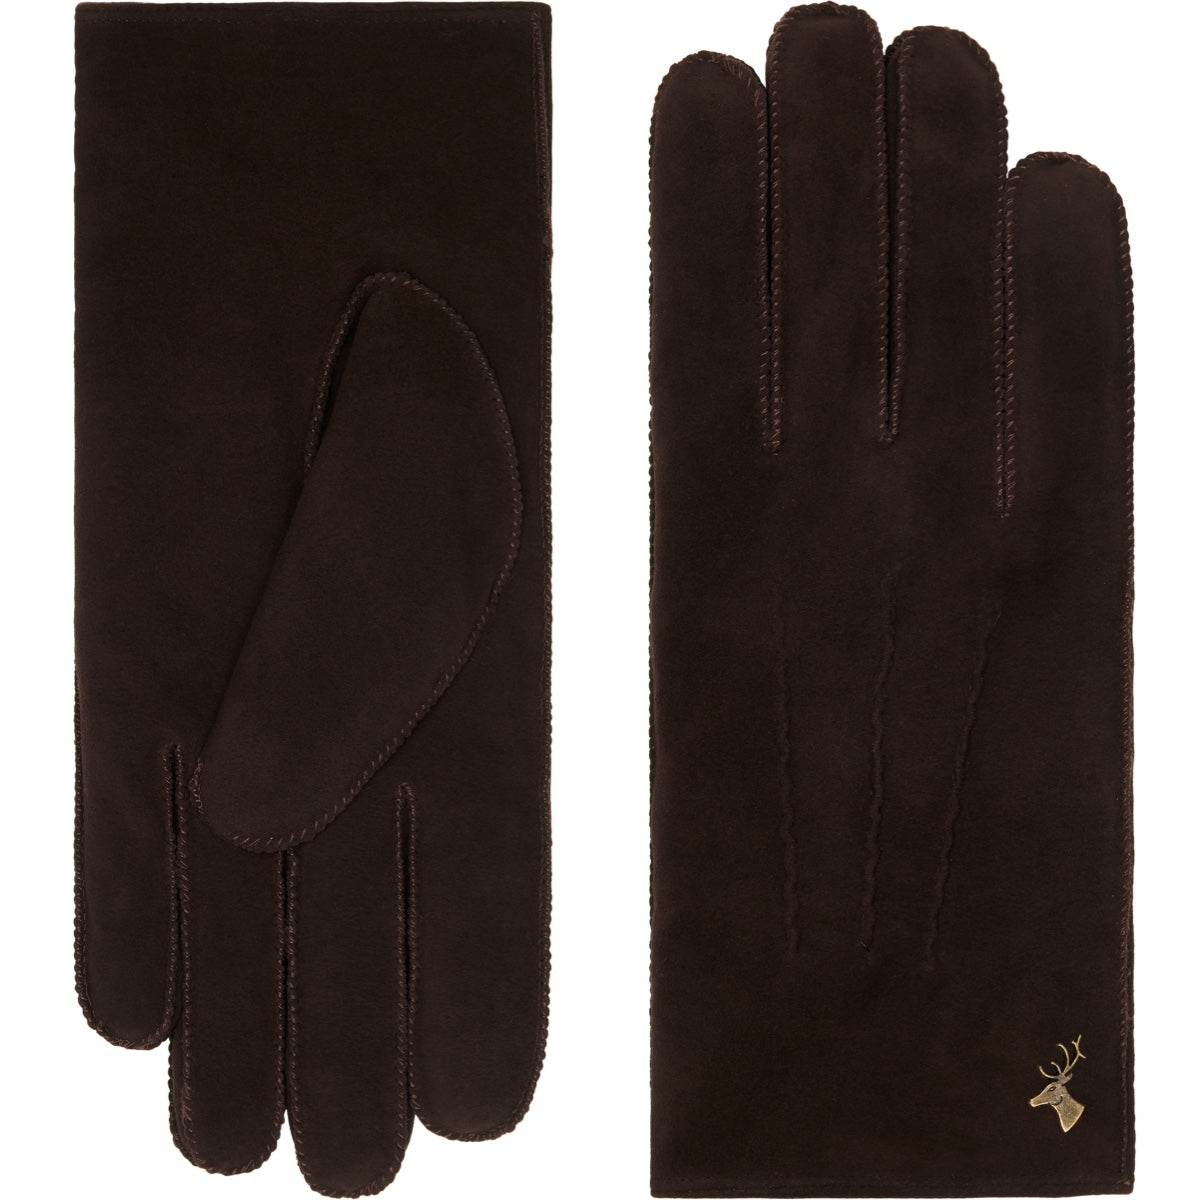 Suede Goatskin Leather Gloves Brown Women Josie - Schwartz & von Halen® - Premium Leather Gloves - 2